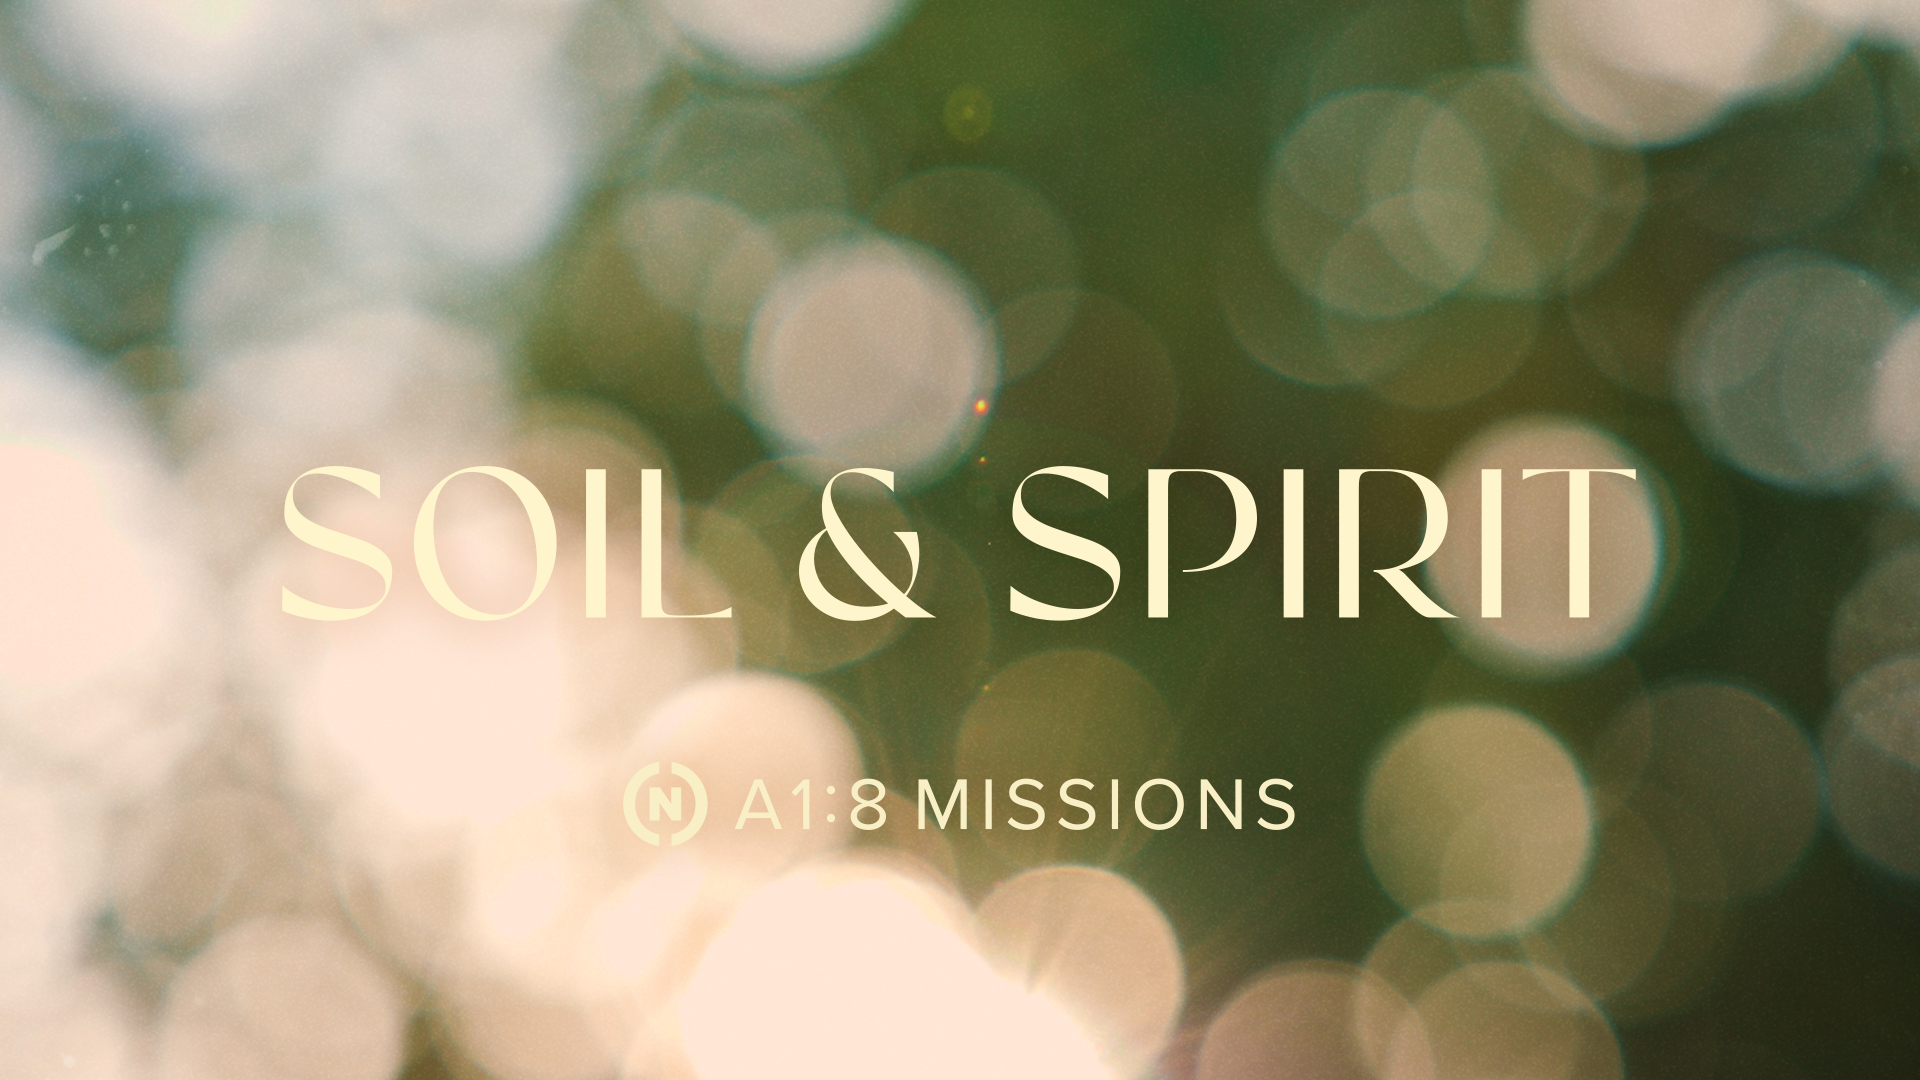 Soil & Spirit Series